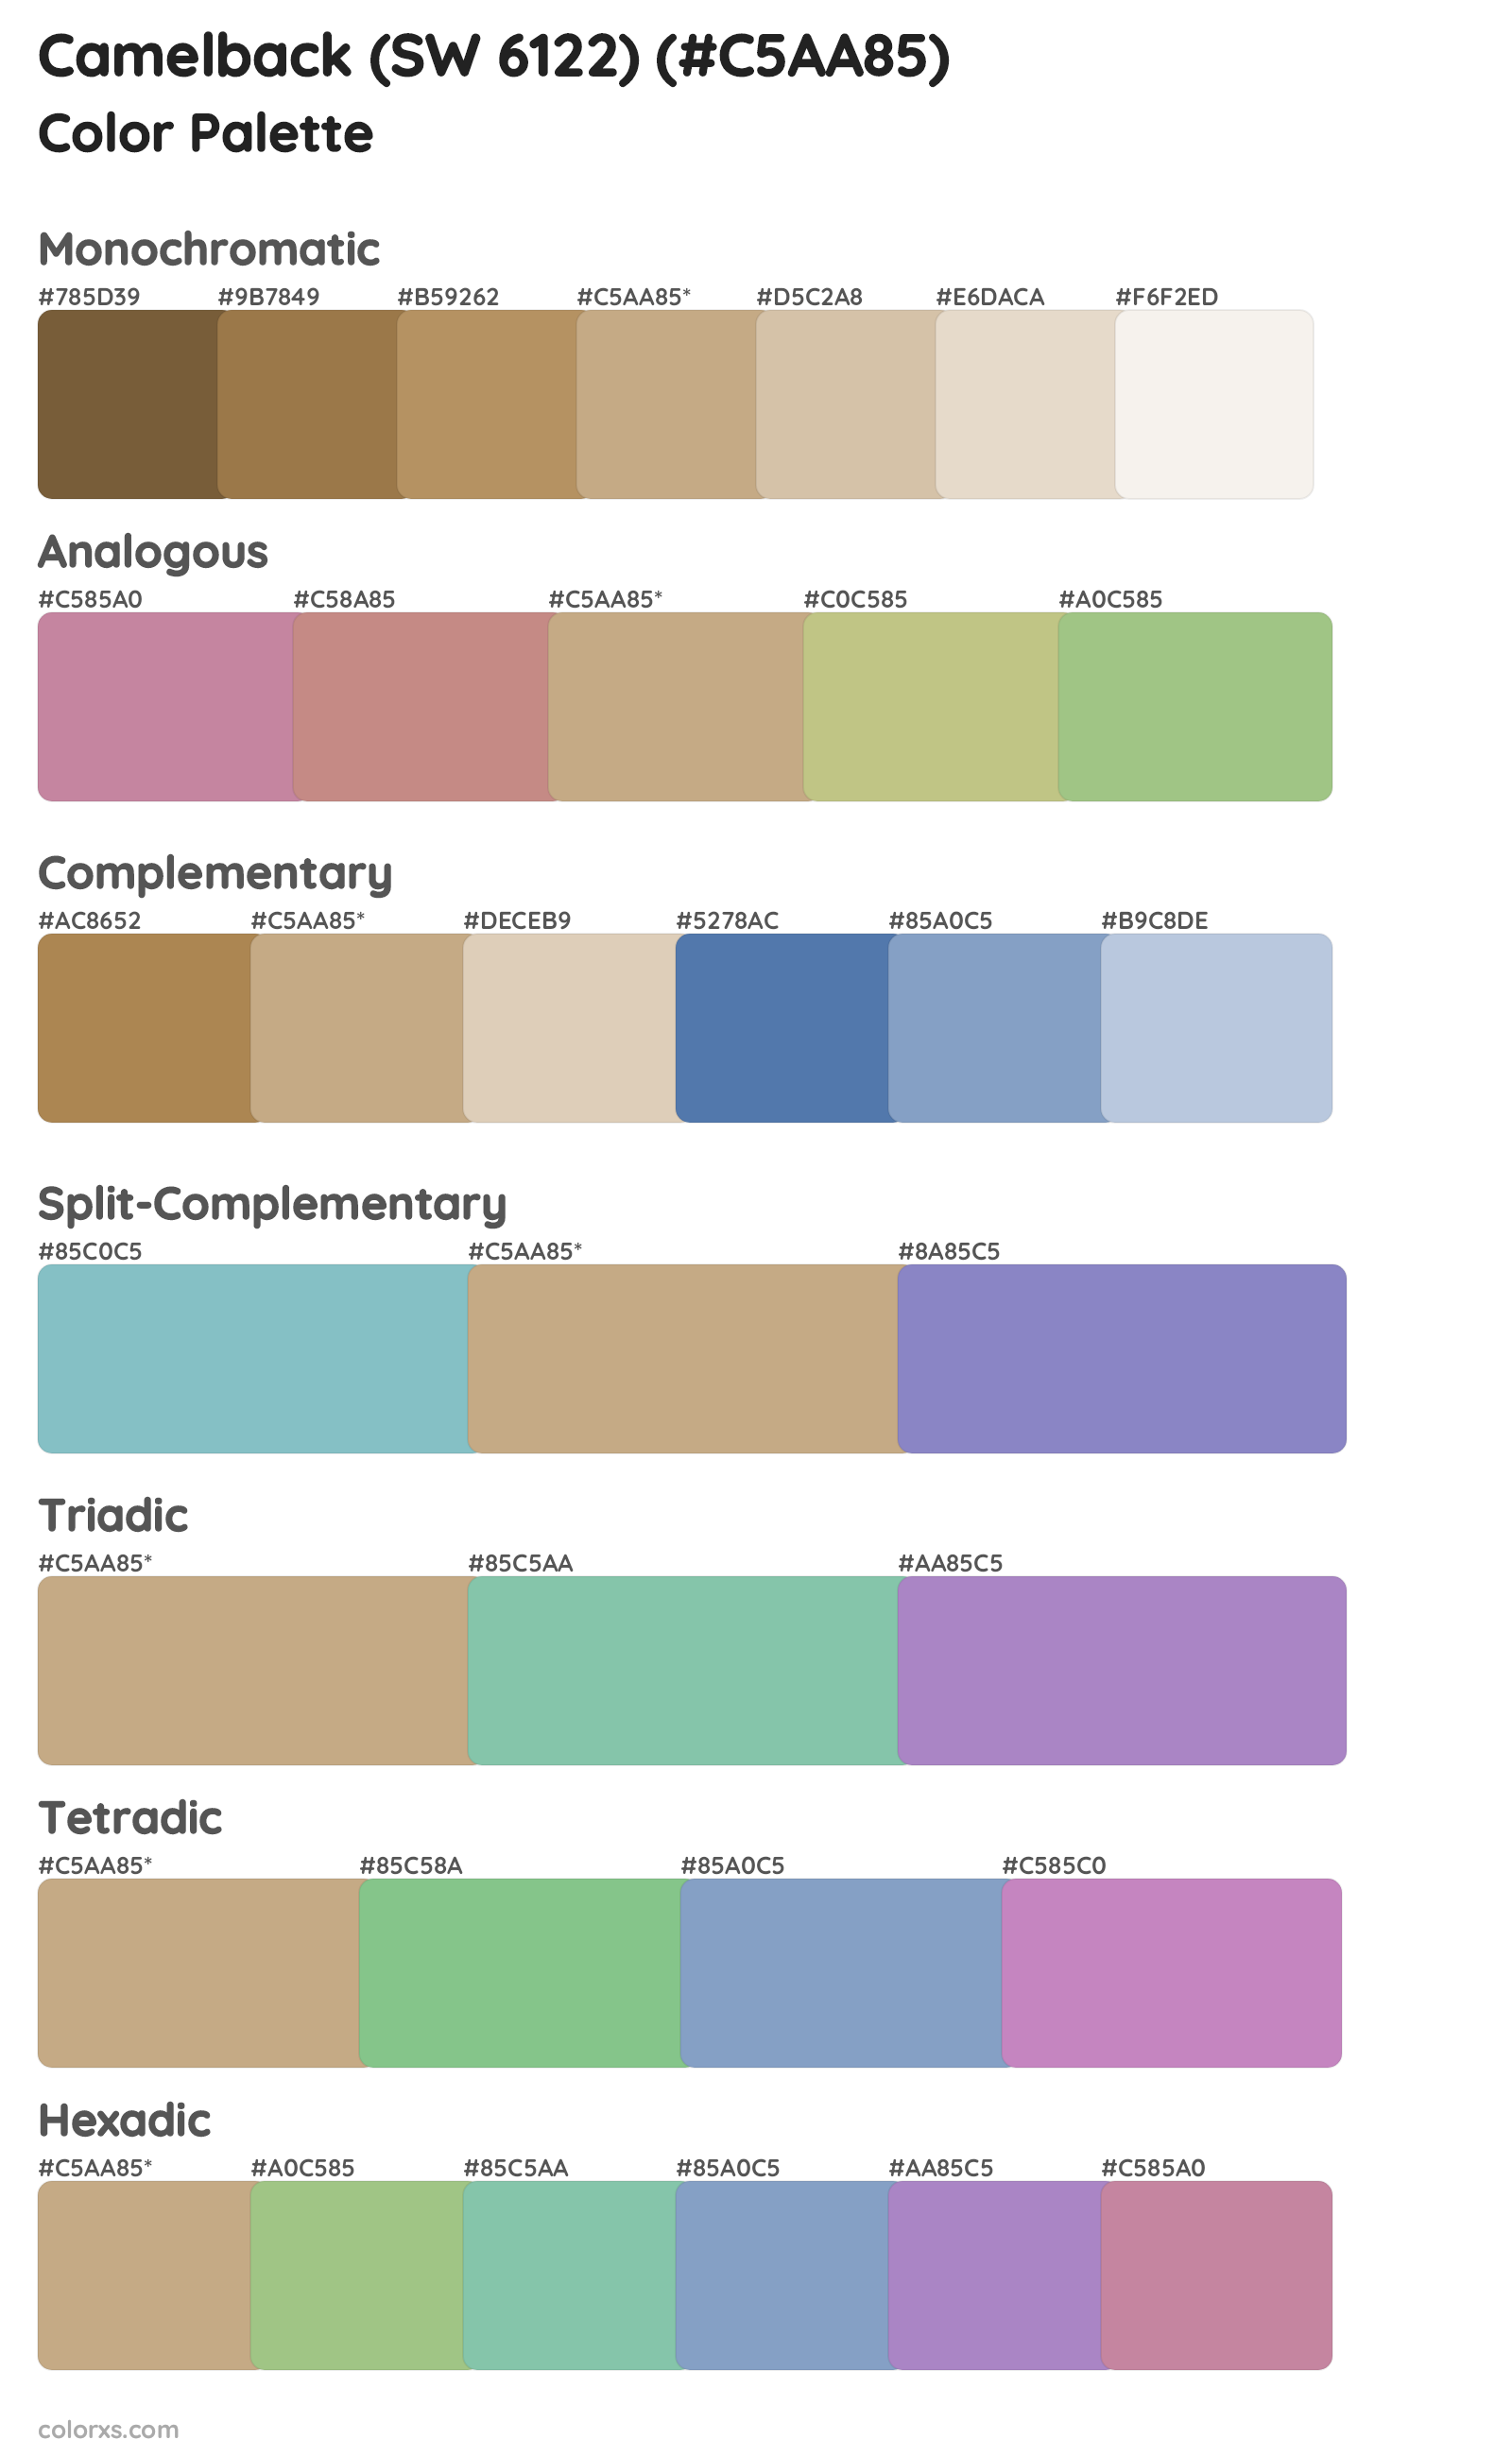 Camelback (SW 6122) Color Scheme Palettes